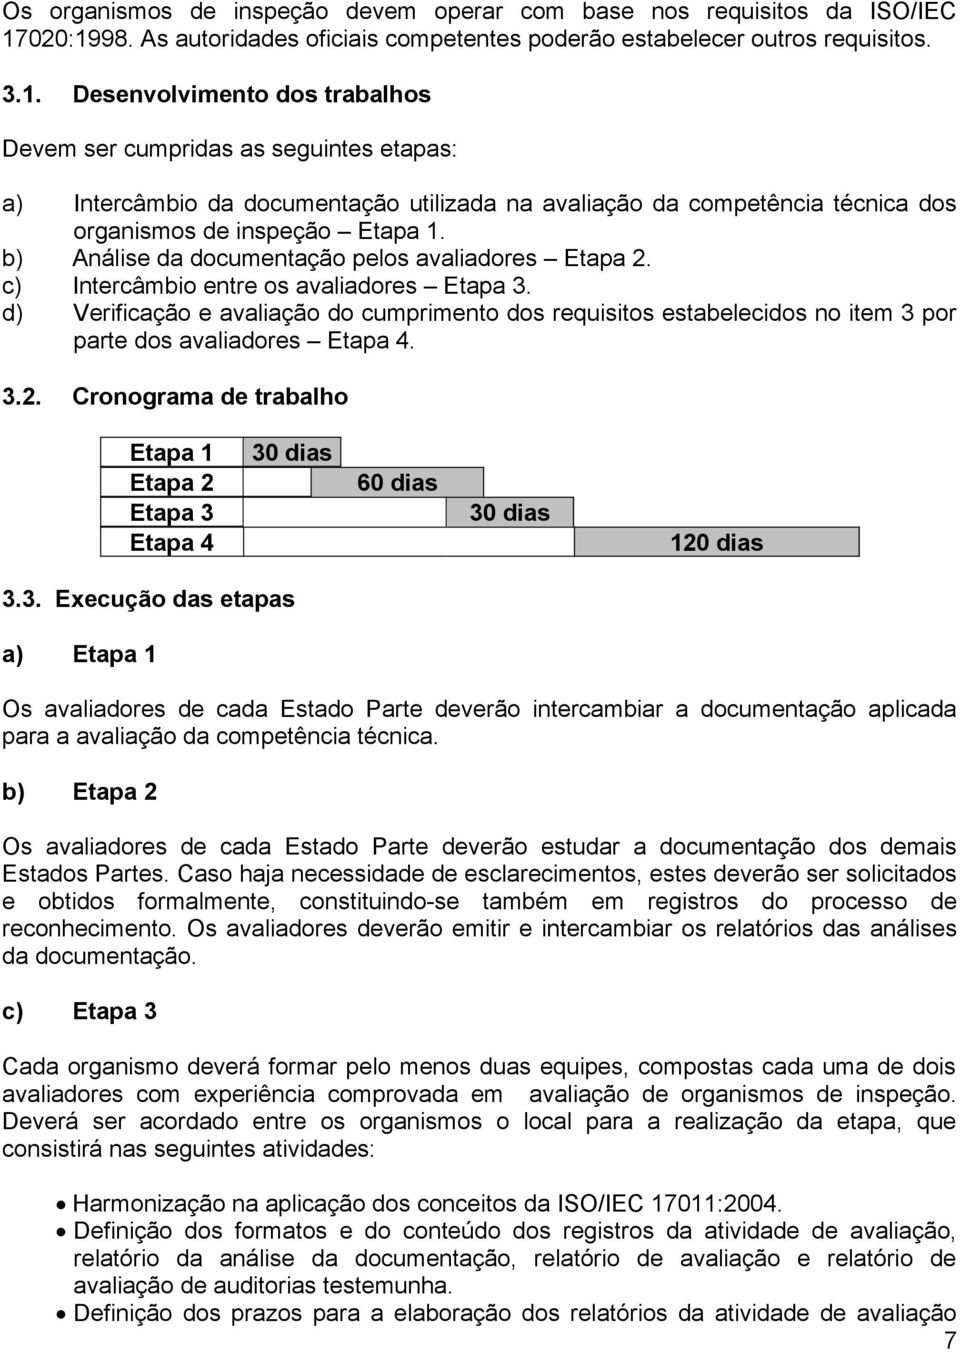 b) Análise da documentação pelos avaliadores Etapa 2. c) Intercâmbio entre os avaliadores Etapa 3.